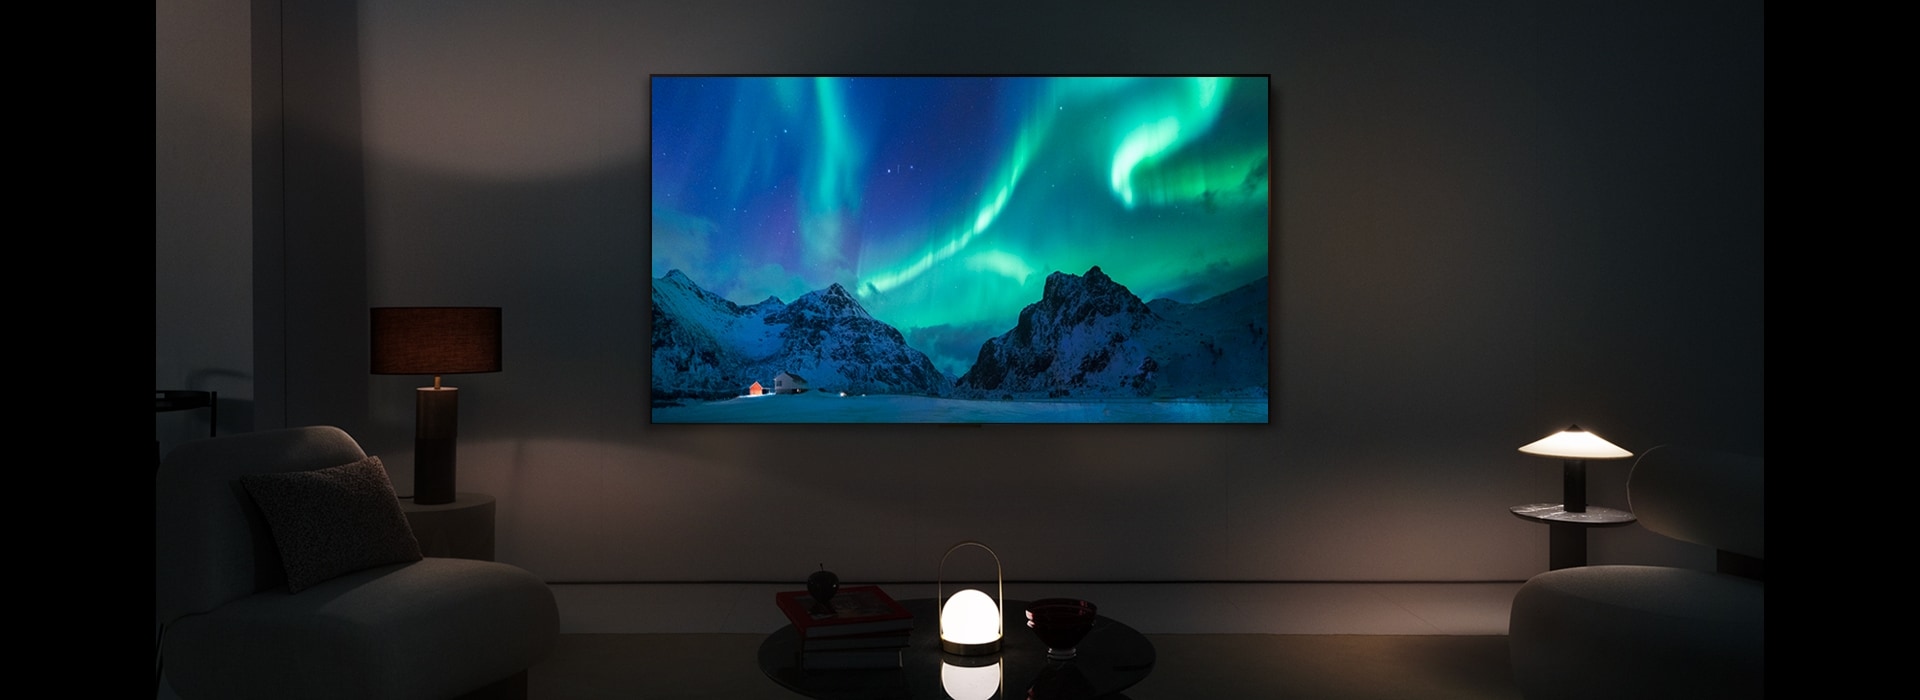 Un TV LG OLED in uno spazio abitativo moderno durante la notte. L'immagine sullo schermo dell'aurora boreale viene visualizzata con i livelli di luminosità ideali.